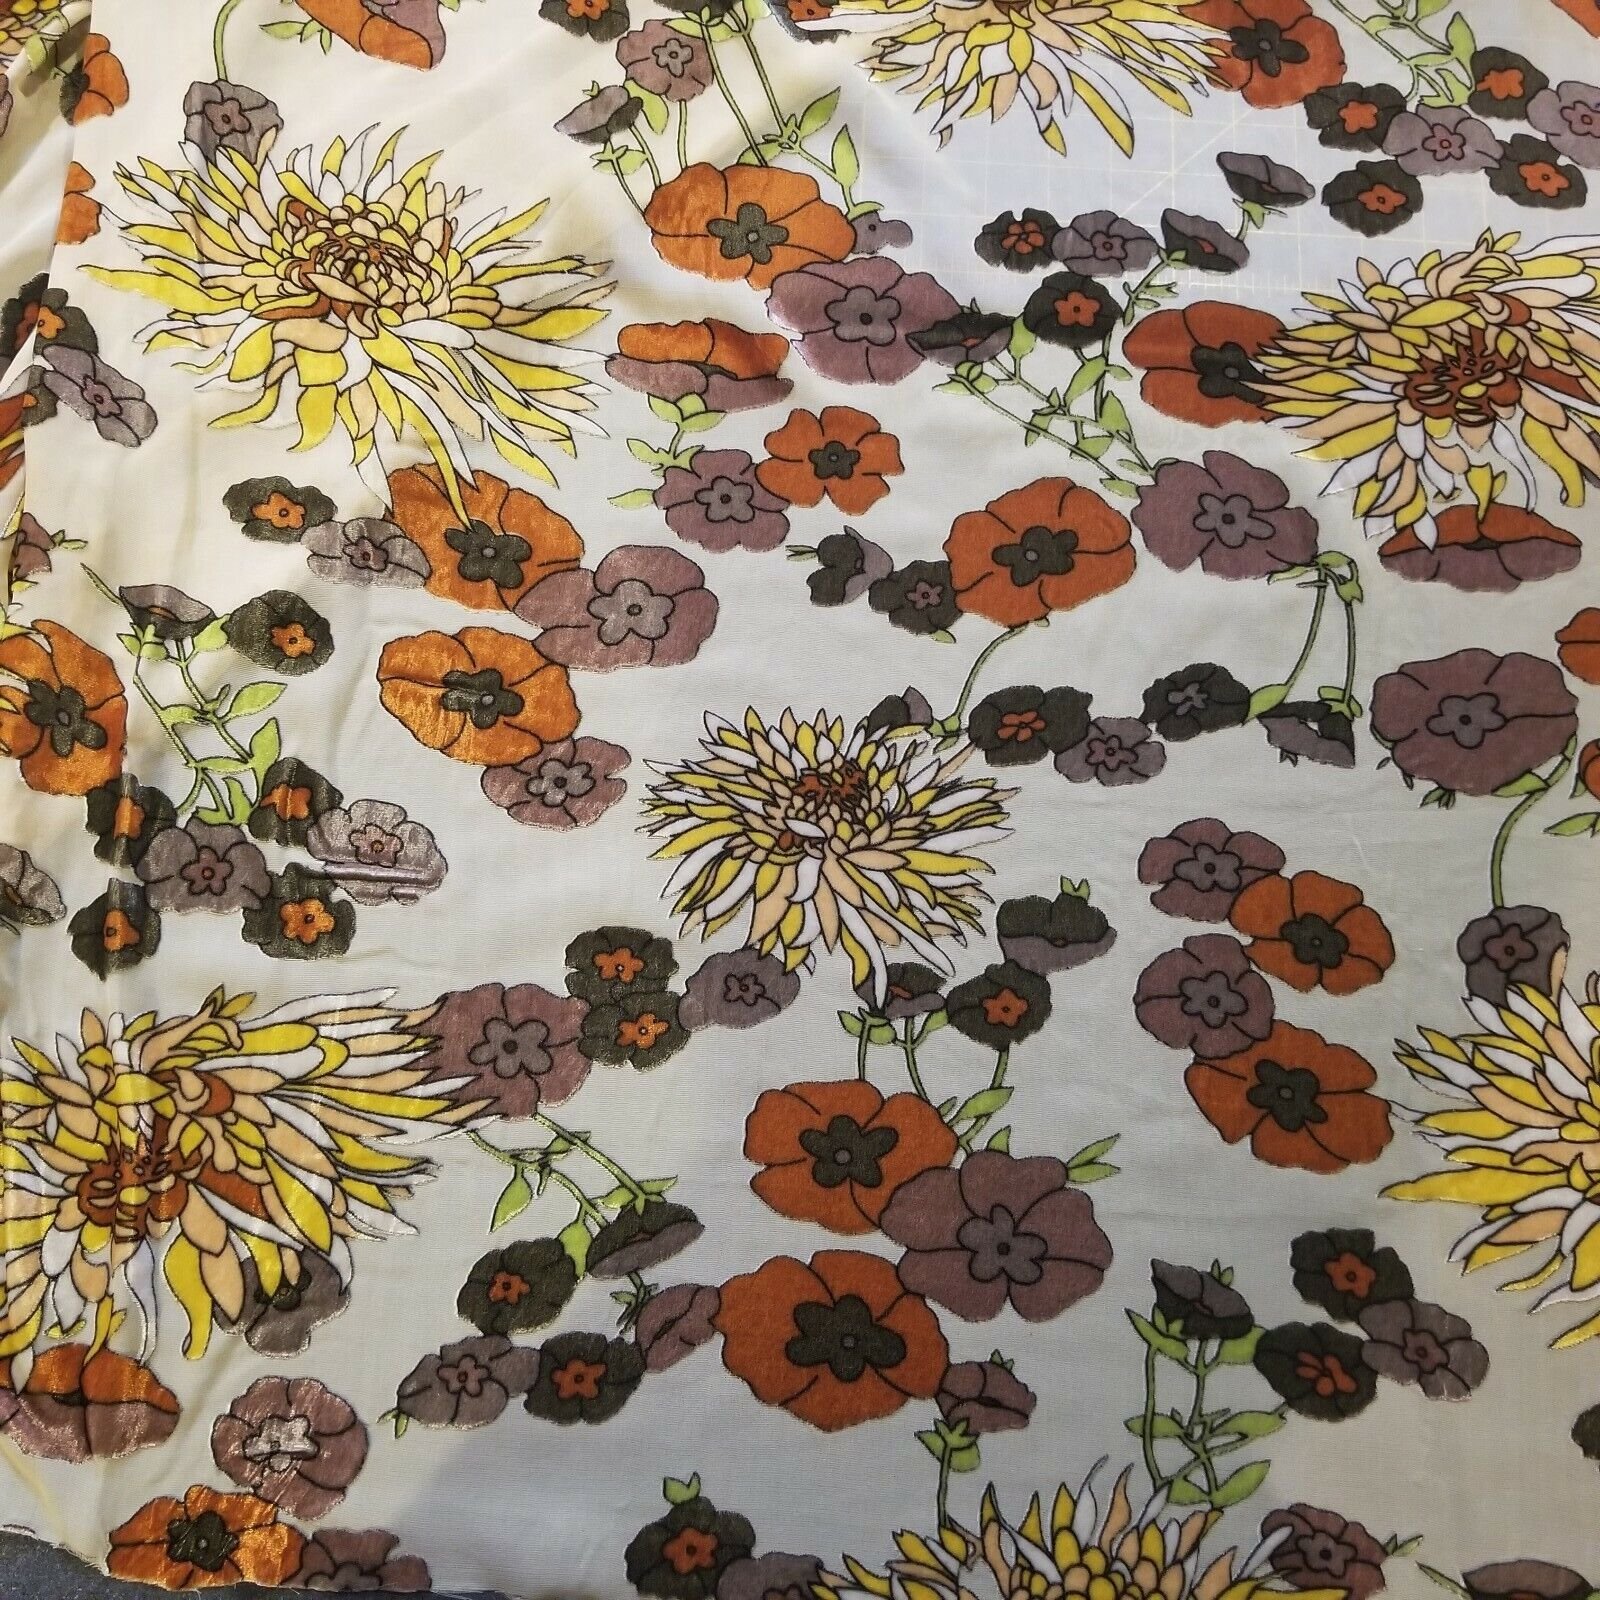 Devoré Velvet Fabric: How to Make Burnout Textiles - FeltMagnet